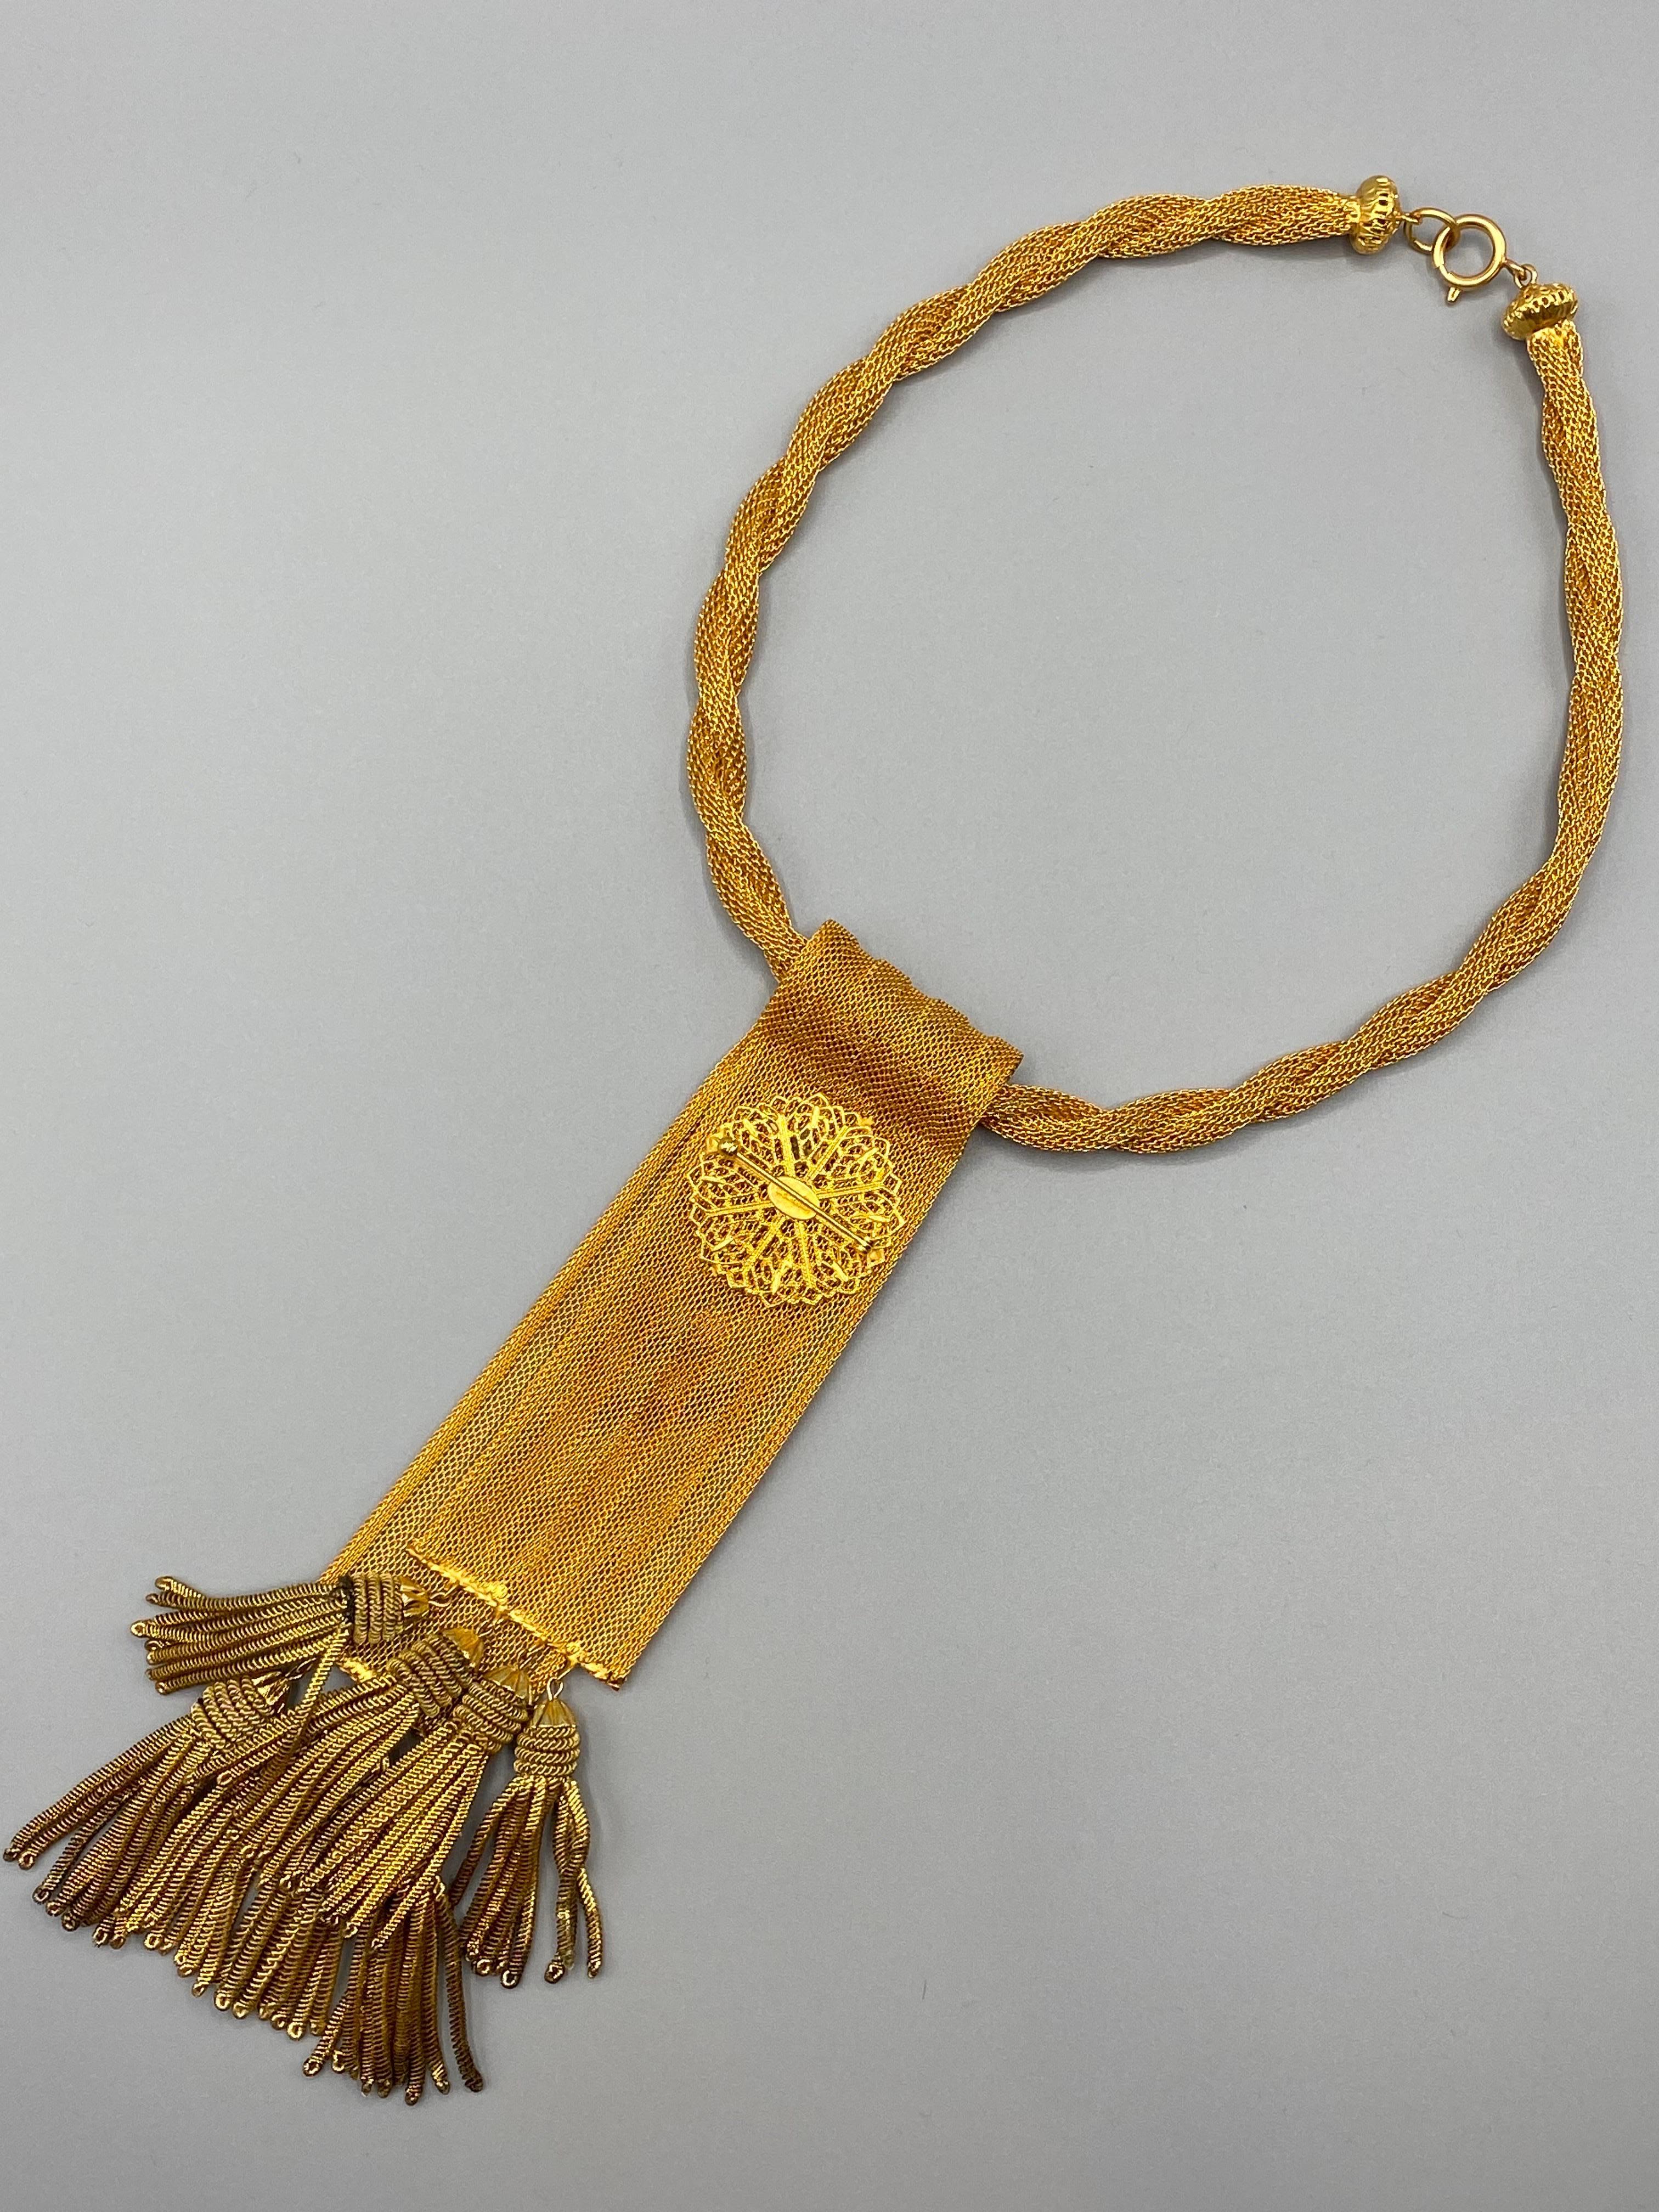 William DeLillo 1970s Mesh Ribbon & Tassel Brooch & Pendant Necklace For Sale 9